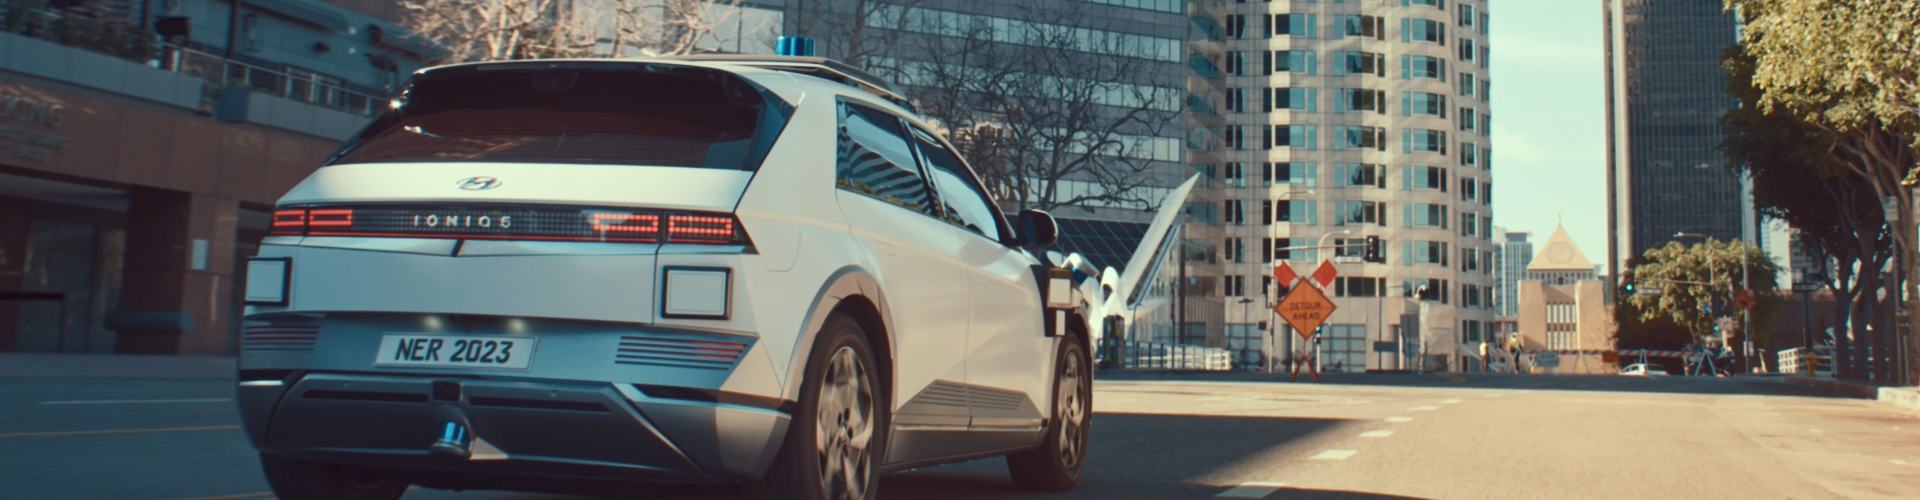 Motional i Hyundai Motor Group przedstawiają IONIQ 5 Robotaxi: autonomiczną taksówkę nowej generacji